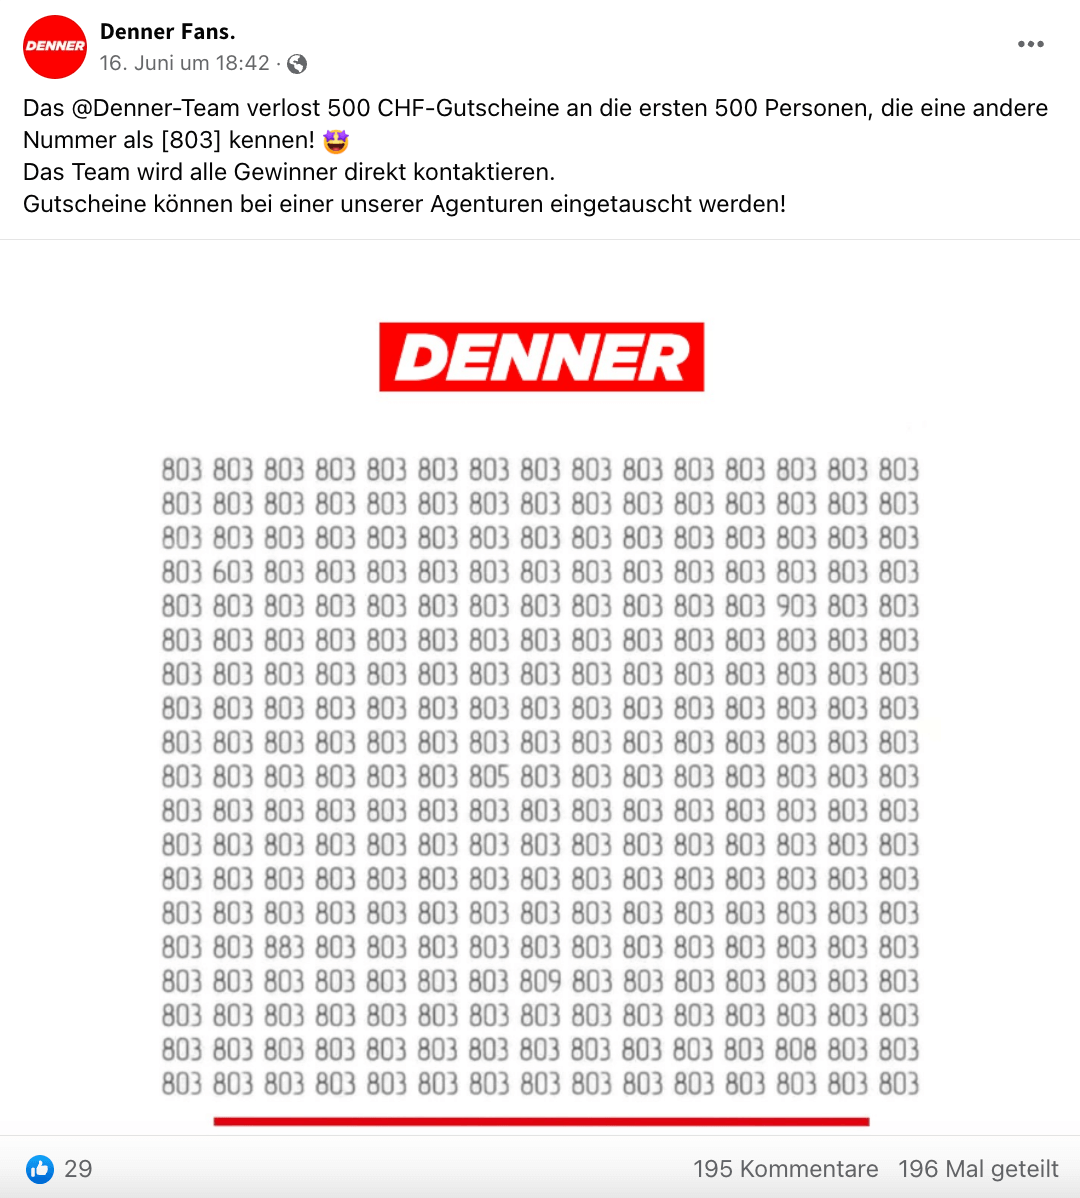 Auf Facebook verbreitet sich ein angebliches Gewinnspiel von Denner. Es gibt jedoch zahlreiche Hinweise, dass es sich dabei um eine Fälschung handelt.